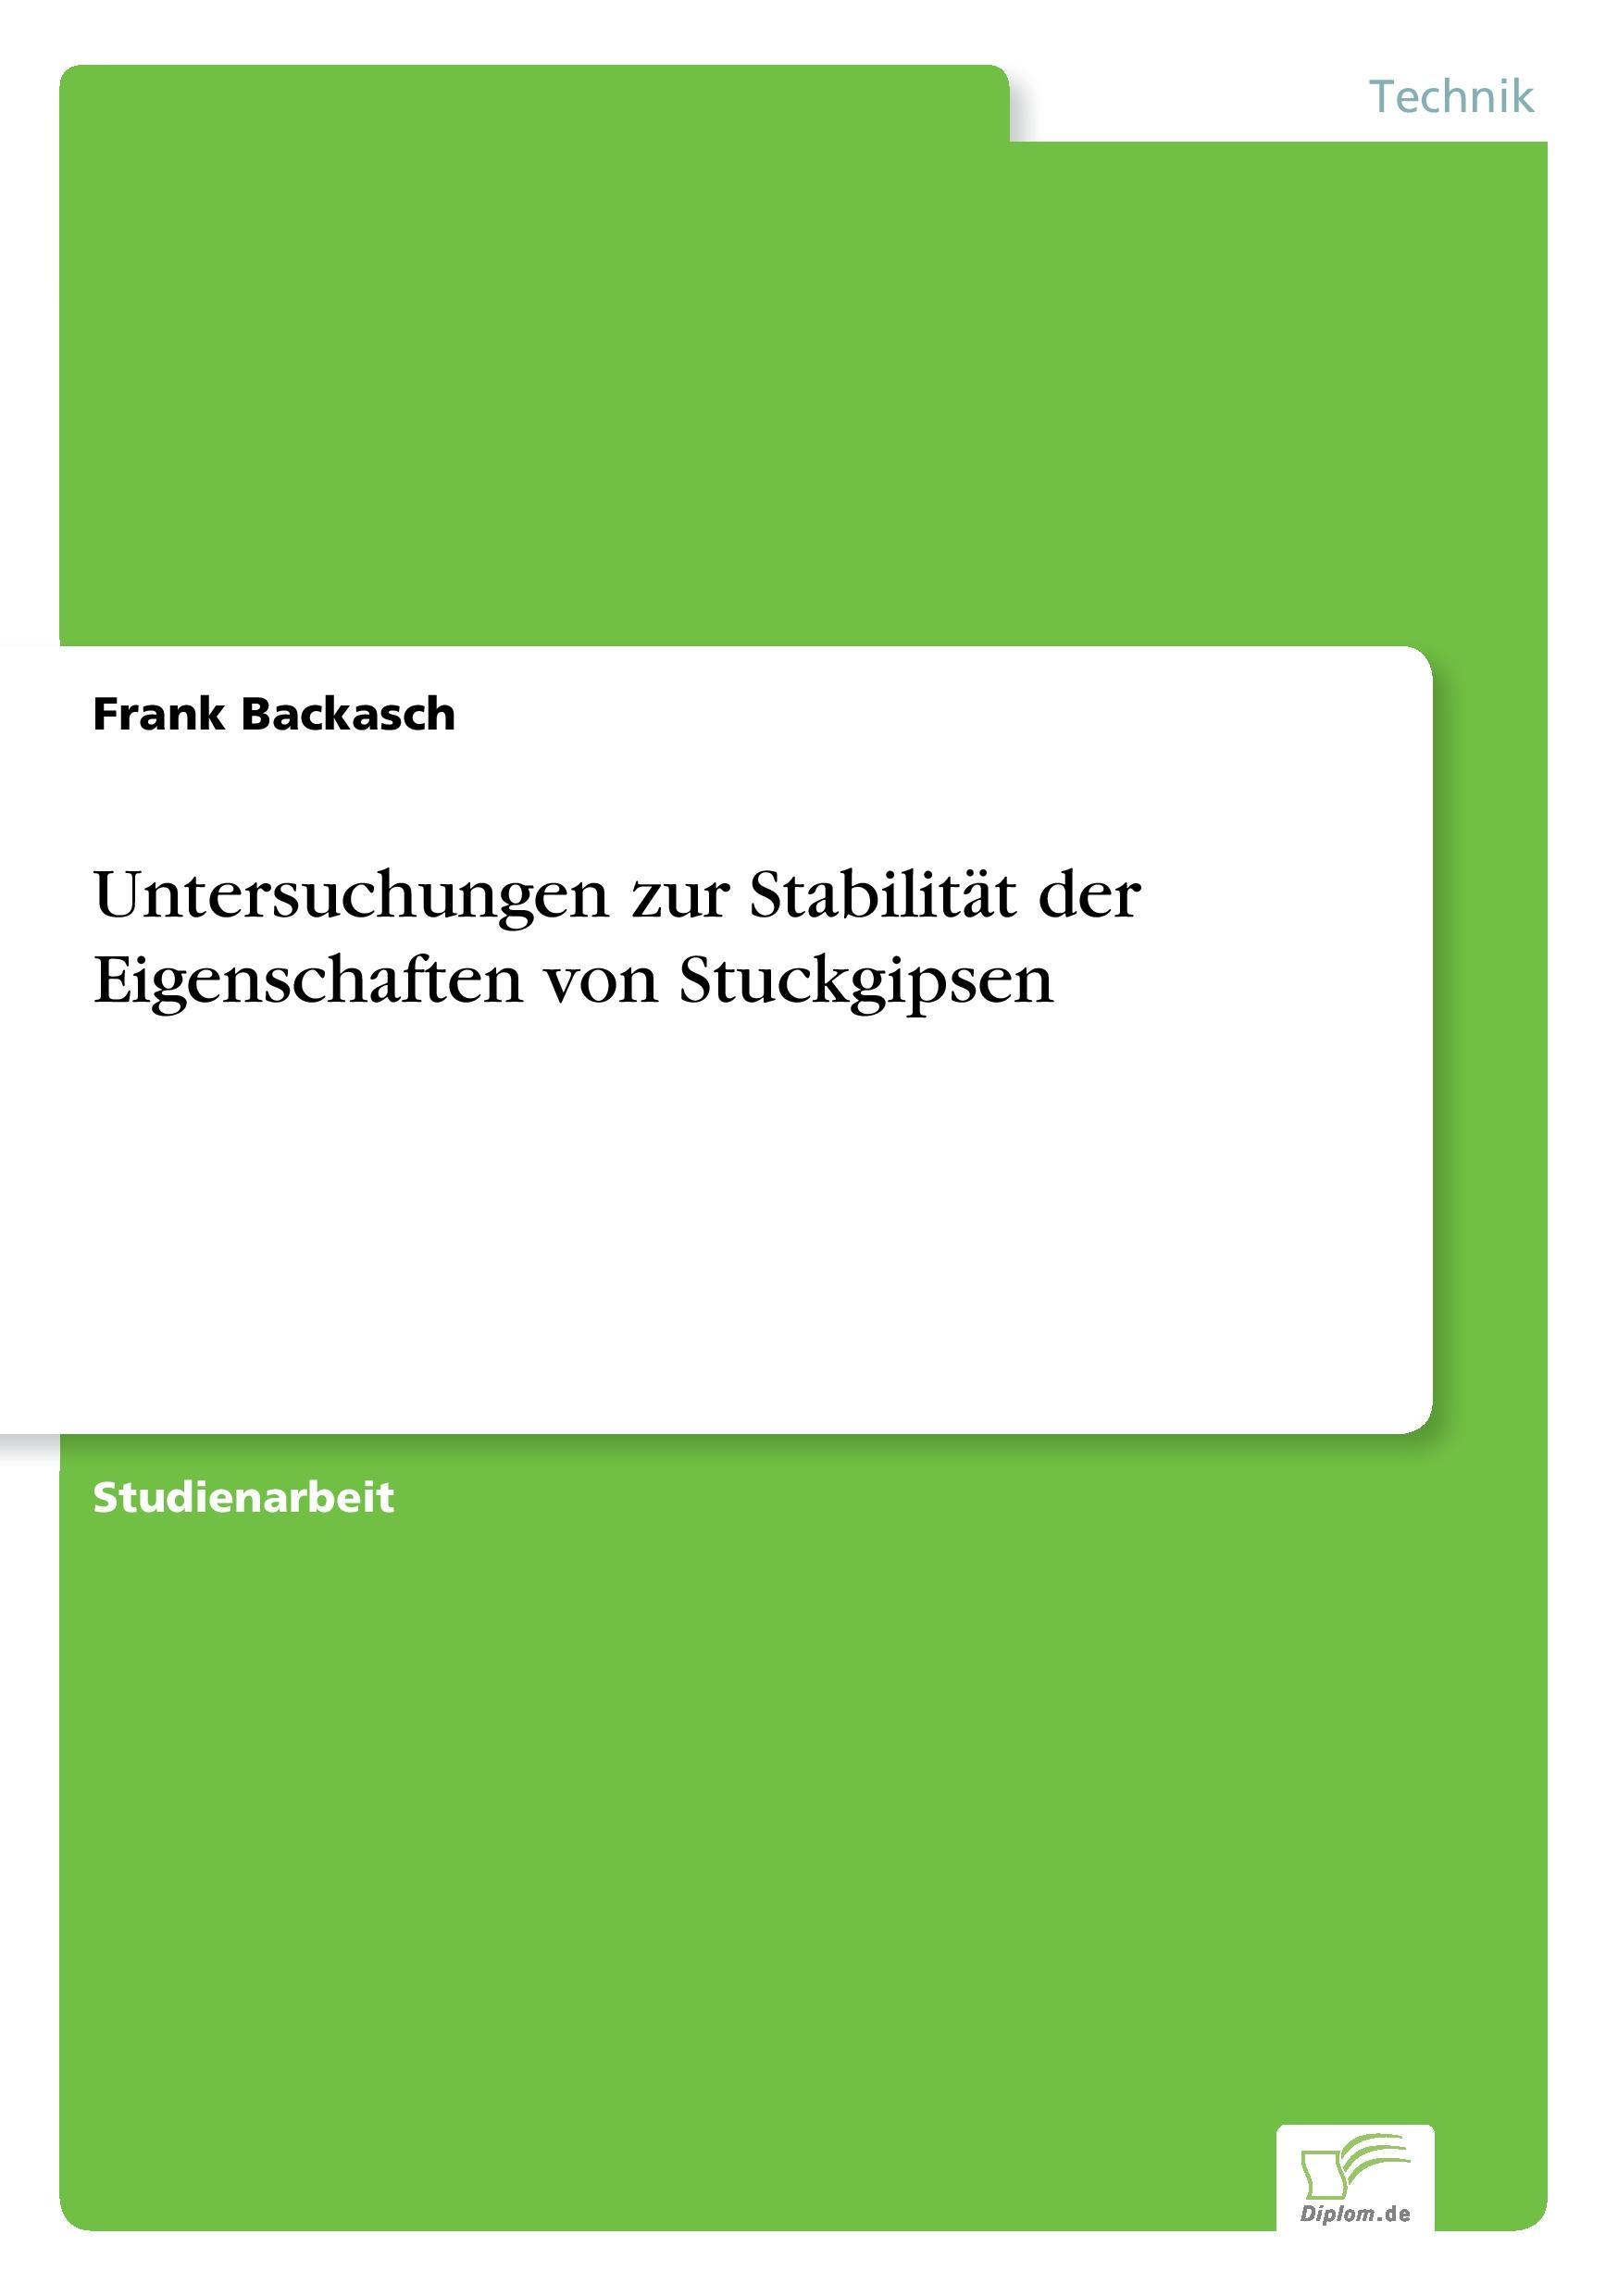 Untersuchungen zur Stabilitaet der Eigenschaften von Stuckgipsen - Backasch, Frank